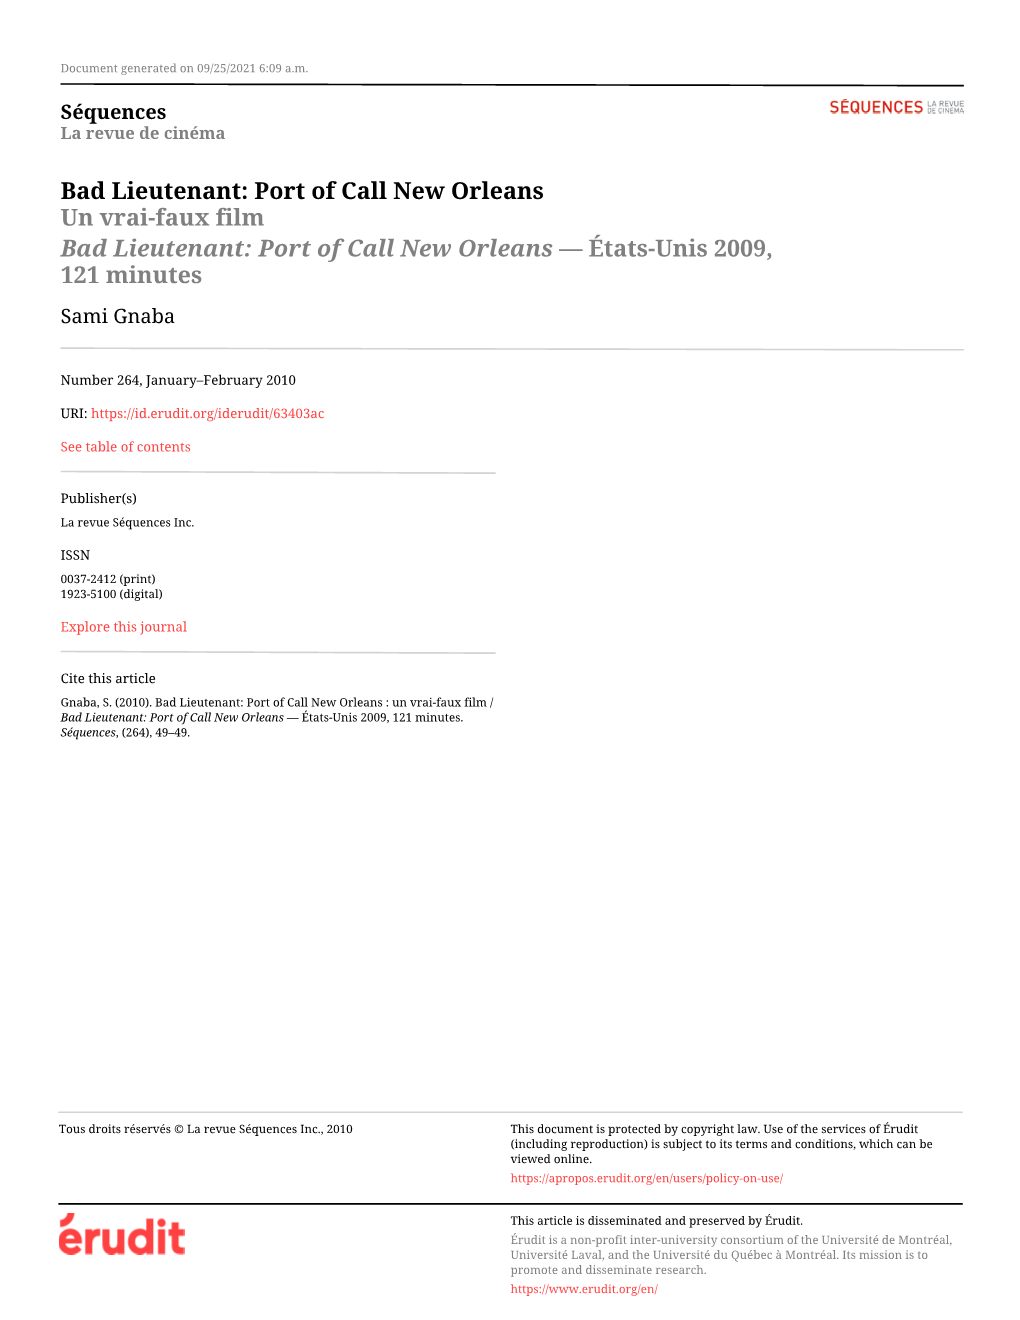 Bad Lieutenant: Port of Call New Orleans Un Vrai-Faux Film Bad Lieutenant: Port of Call New Orleans — États-Unis 2009, 121 Minutes Sami Gnaba